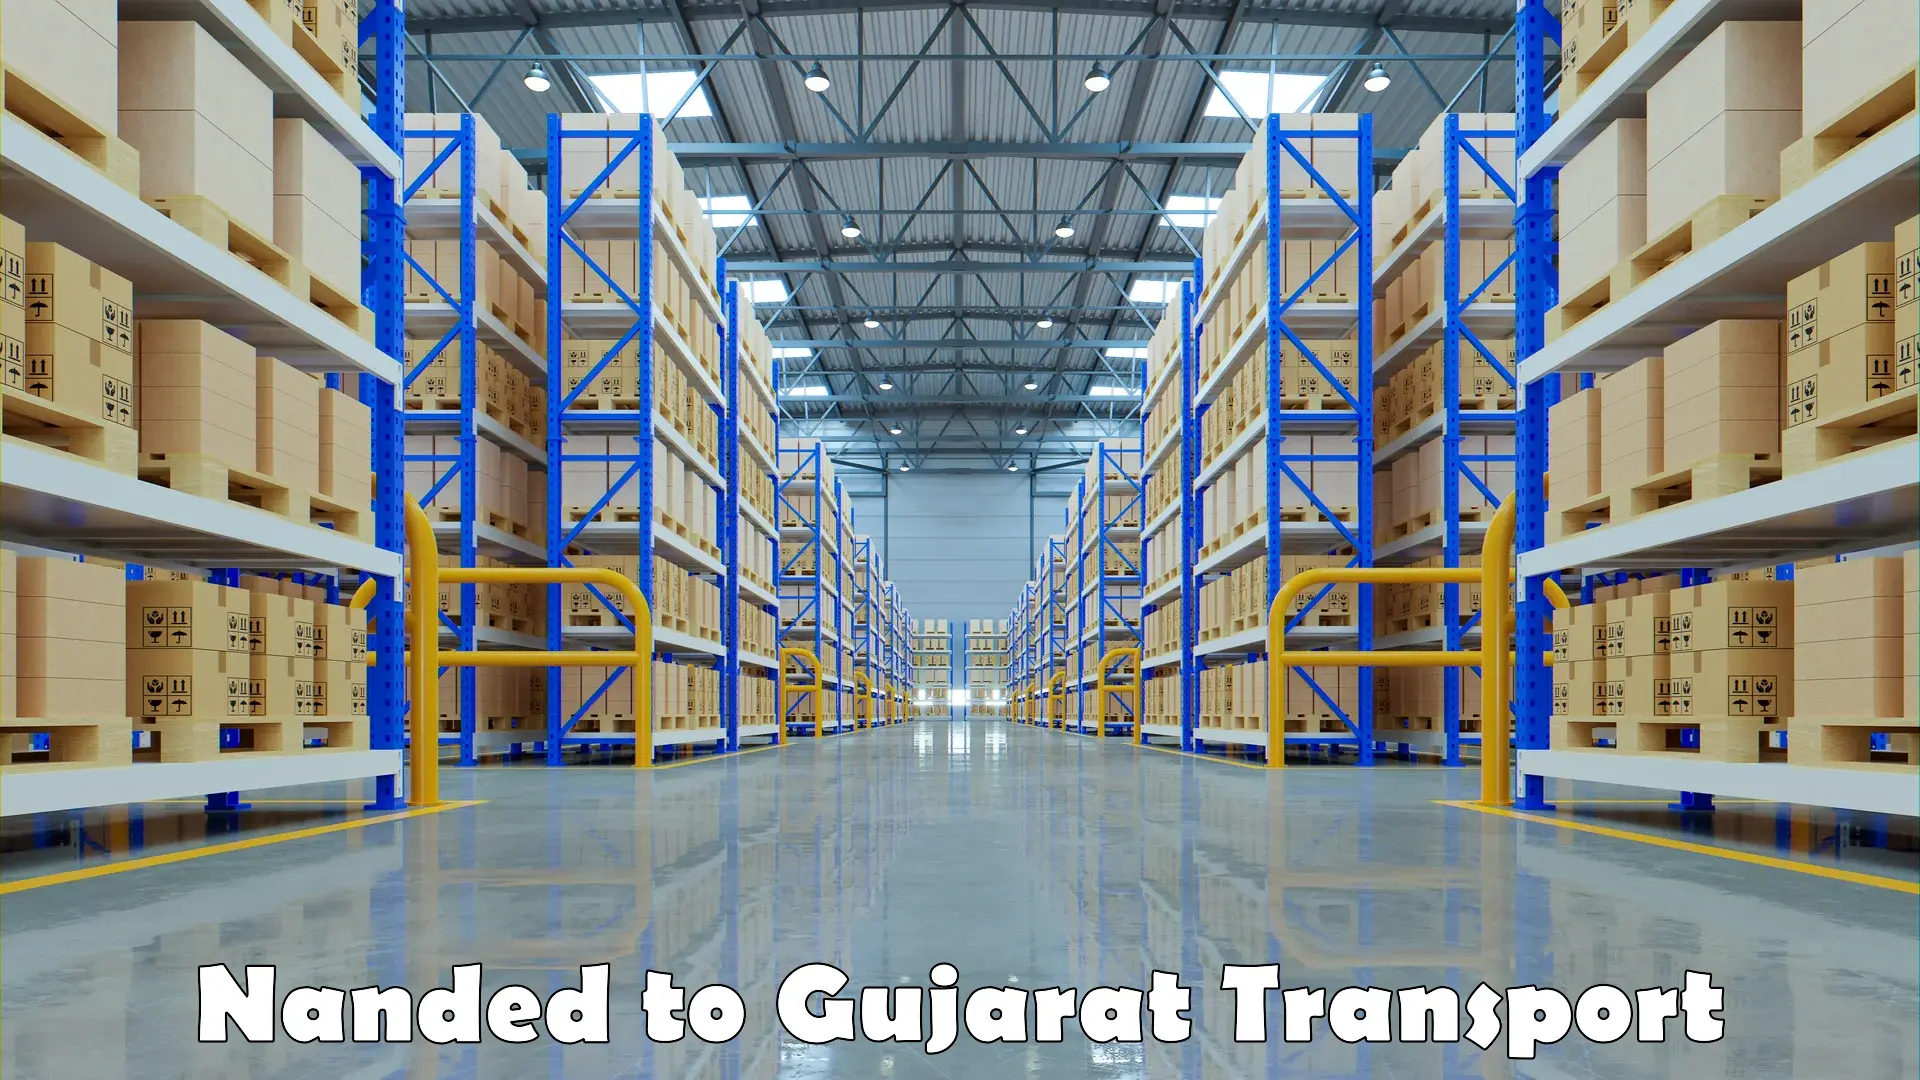 Online transport service Nanded to Gujarat